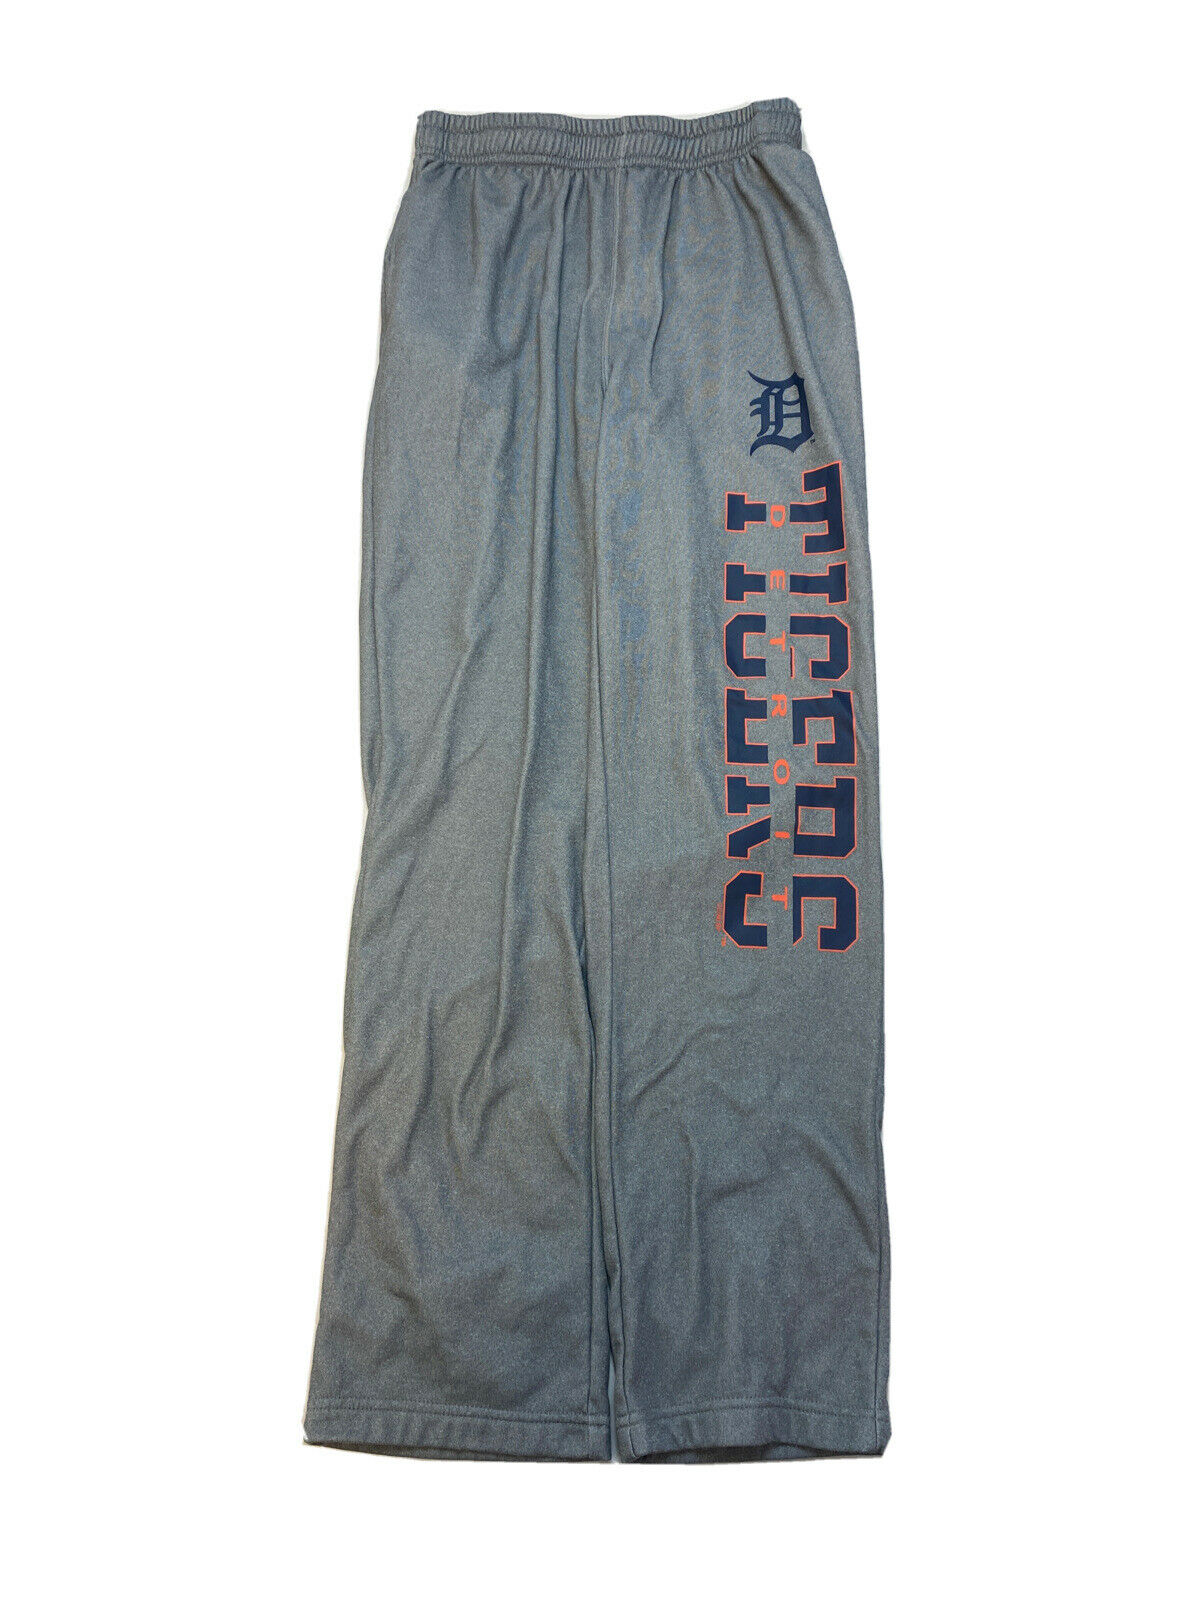 Genuine Merchandise Men's Gray Detroit Tigers Sweatpants Sz S